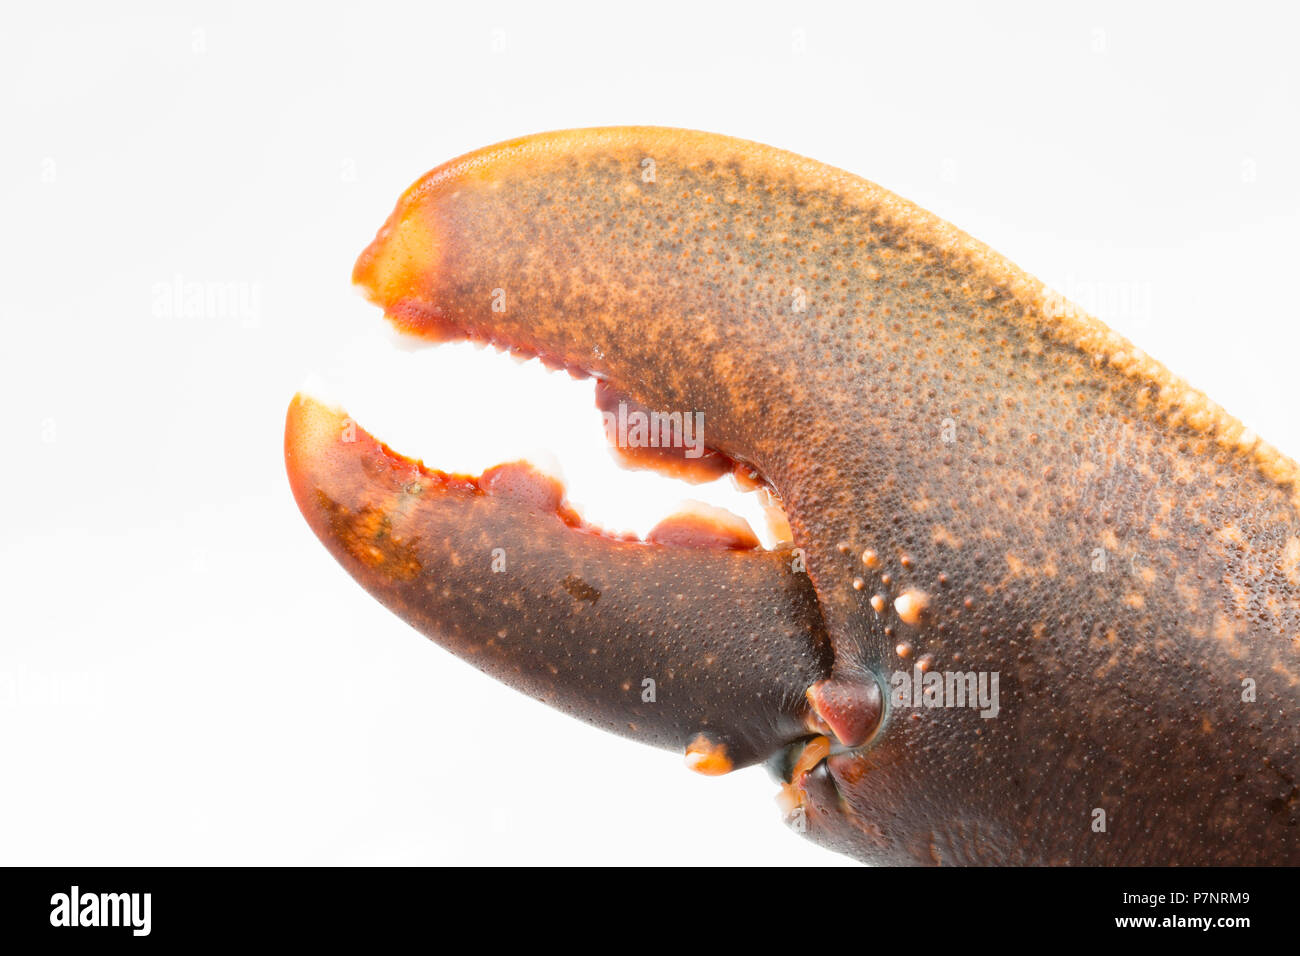 Un homard Homarus gammarus, non cuits, à partir de la Manche qui a été pris dans un pot. L'image montre la main droite qui pince est utilisée pour les crus Banque D'Images